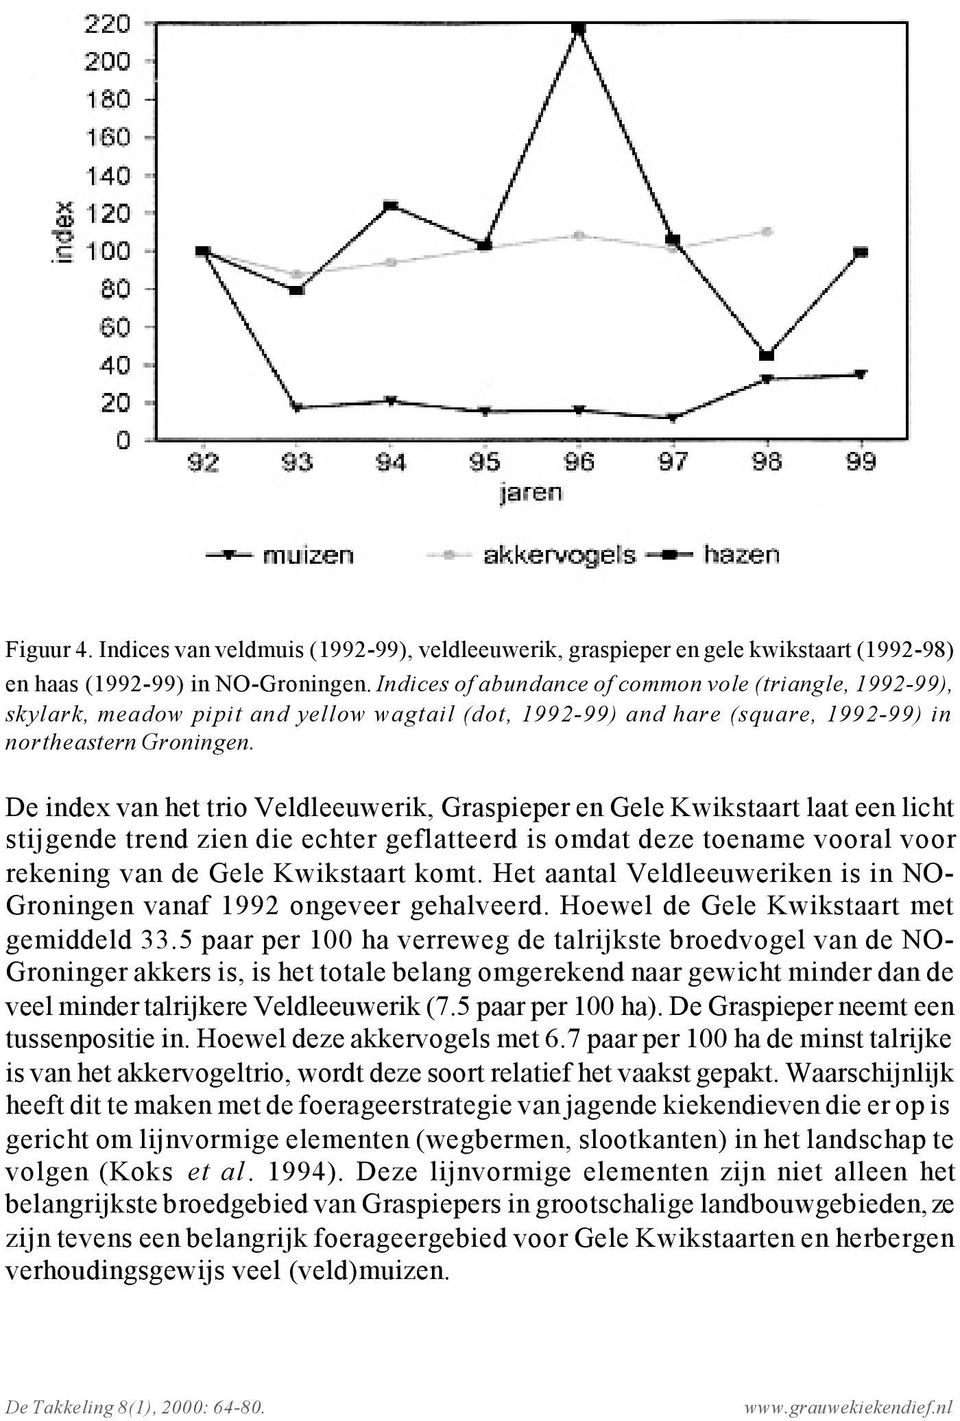 De index van het trio Veldleeuwerik, Graspieper en Gele Kwikstaart laat een licht stijgende trend zien die echter geflatteerd is omdat deze toename vooral voor rekening van de Gele Kwikstaart komt.